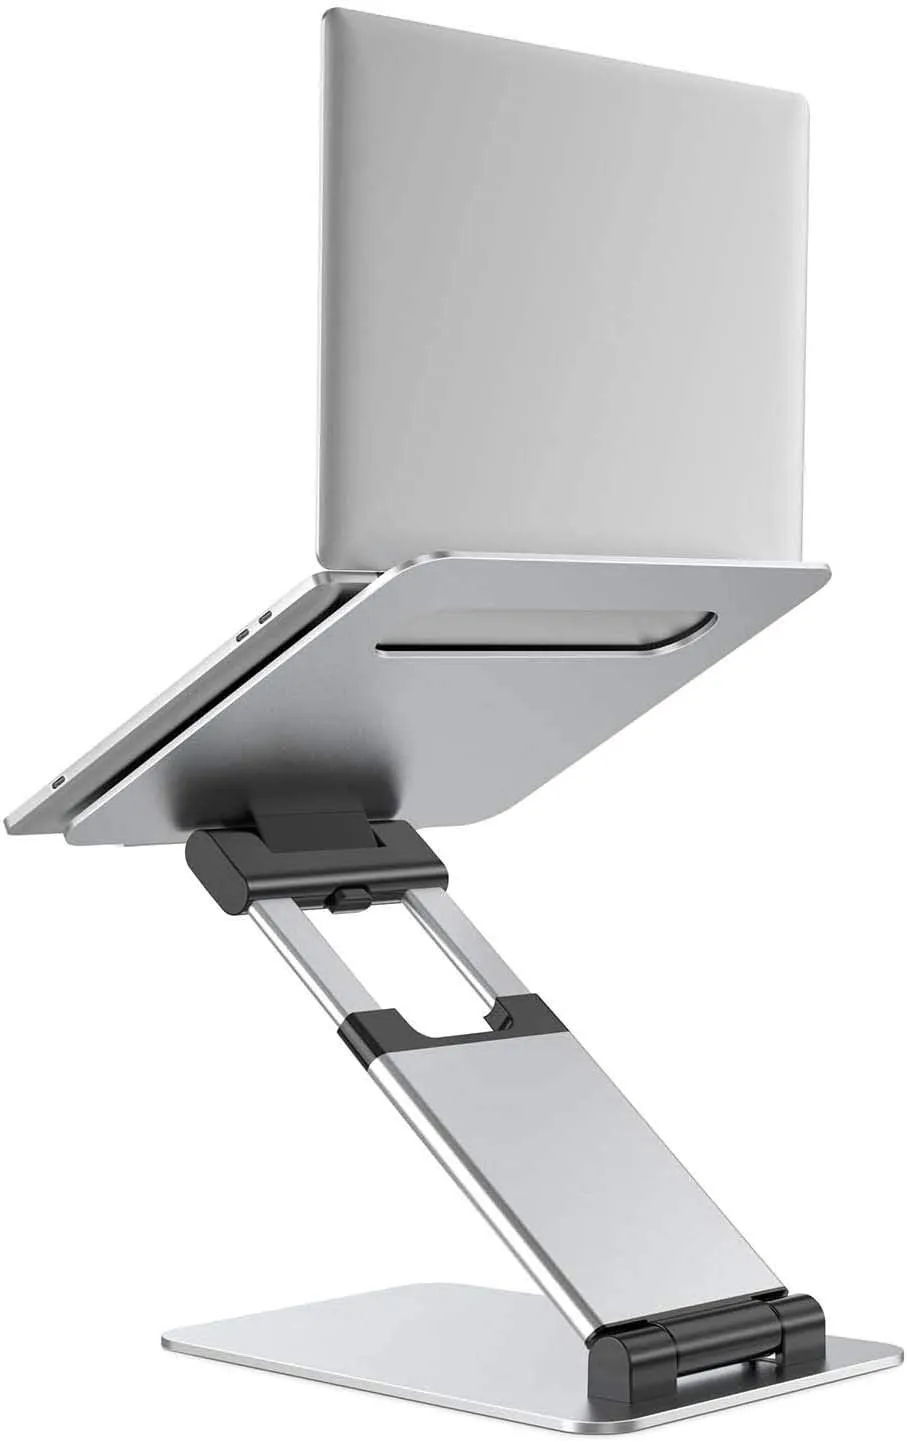 Laptop standı tutucu ayarlanabilir açı ve yükseklik 2 "ila 14", ergonomik, katlanabilir, oturma veya stand pozisyonundan, Macbook, 17'ye kadar olan dizüstü bilgisayarlarla uyumludur.